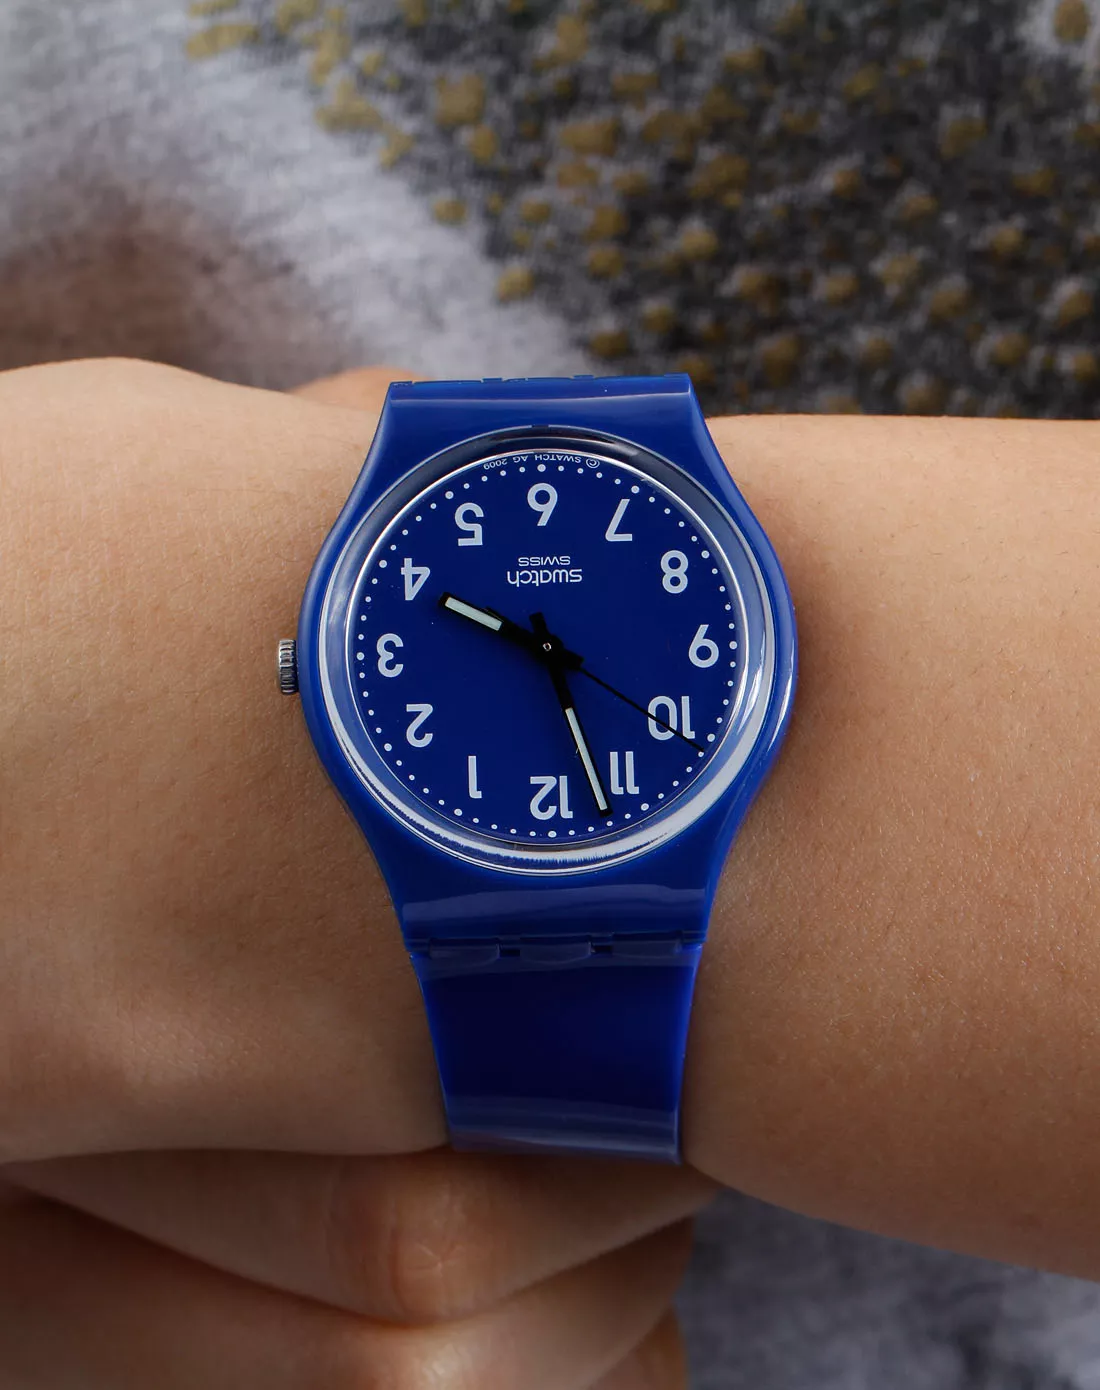 Swatch Watch, Unisex Swiss Blue Polyurethane, 34mm 